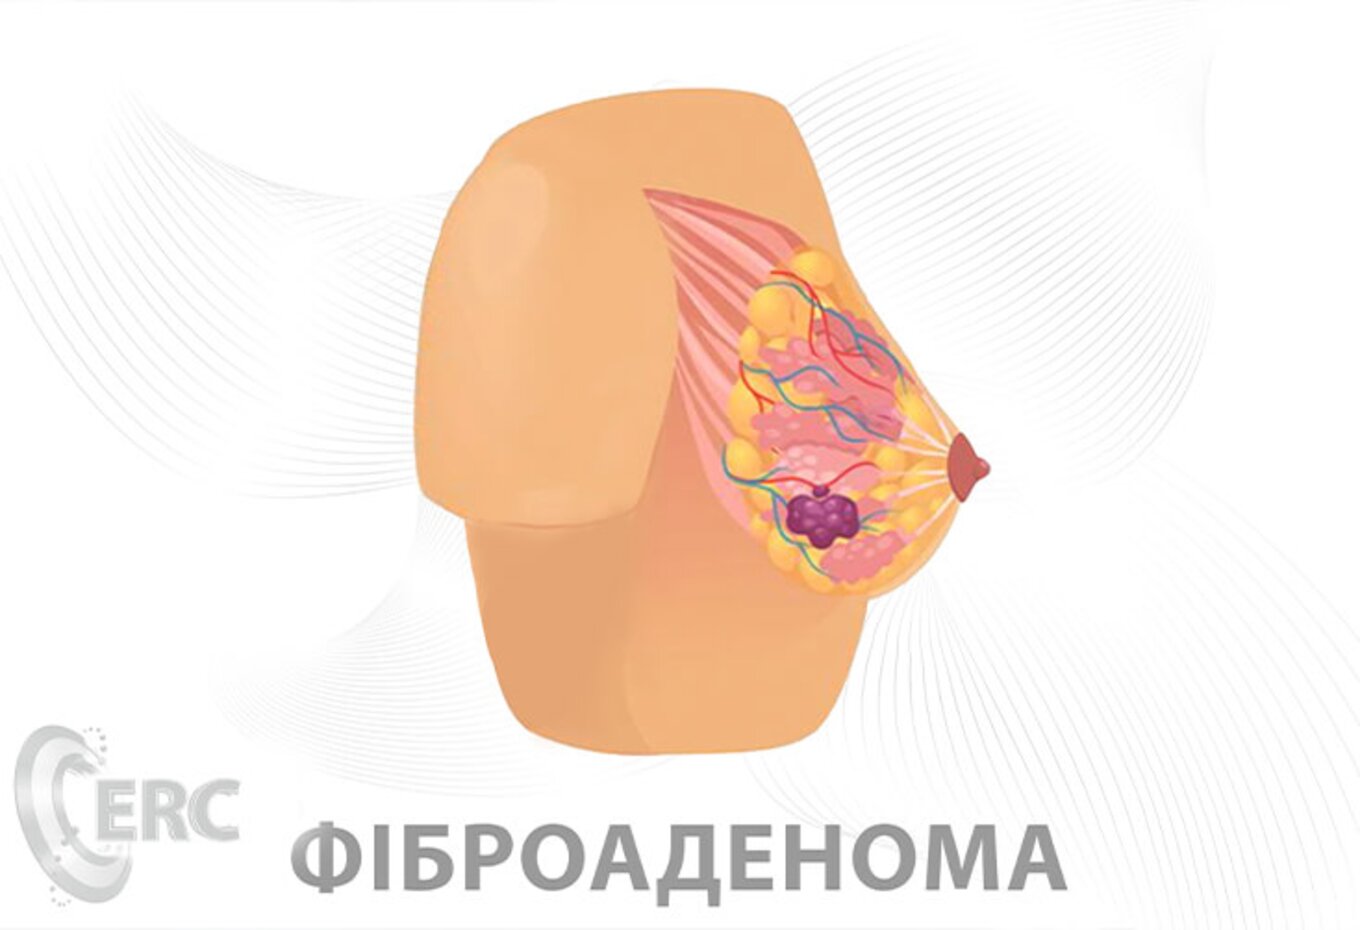 Симптомы фиброаденомы и способы её лечения — медицинские статьи Европейского Радиологического Центра